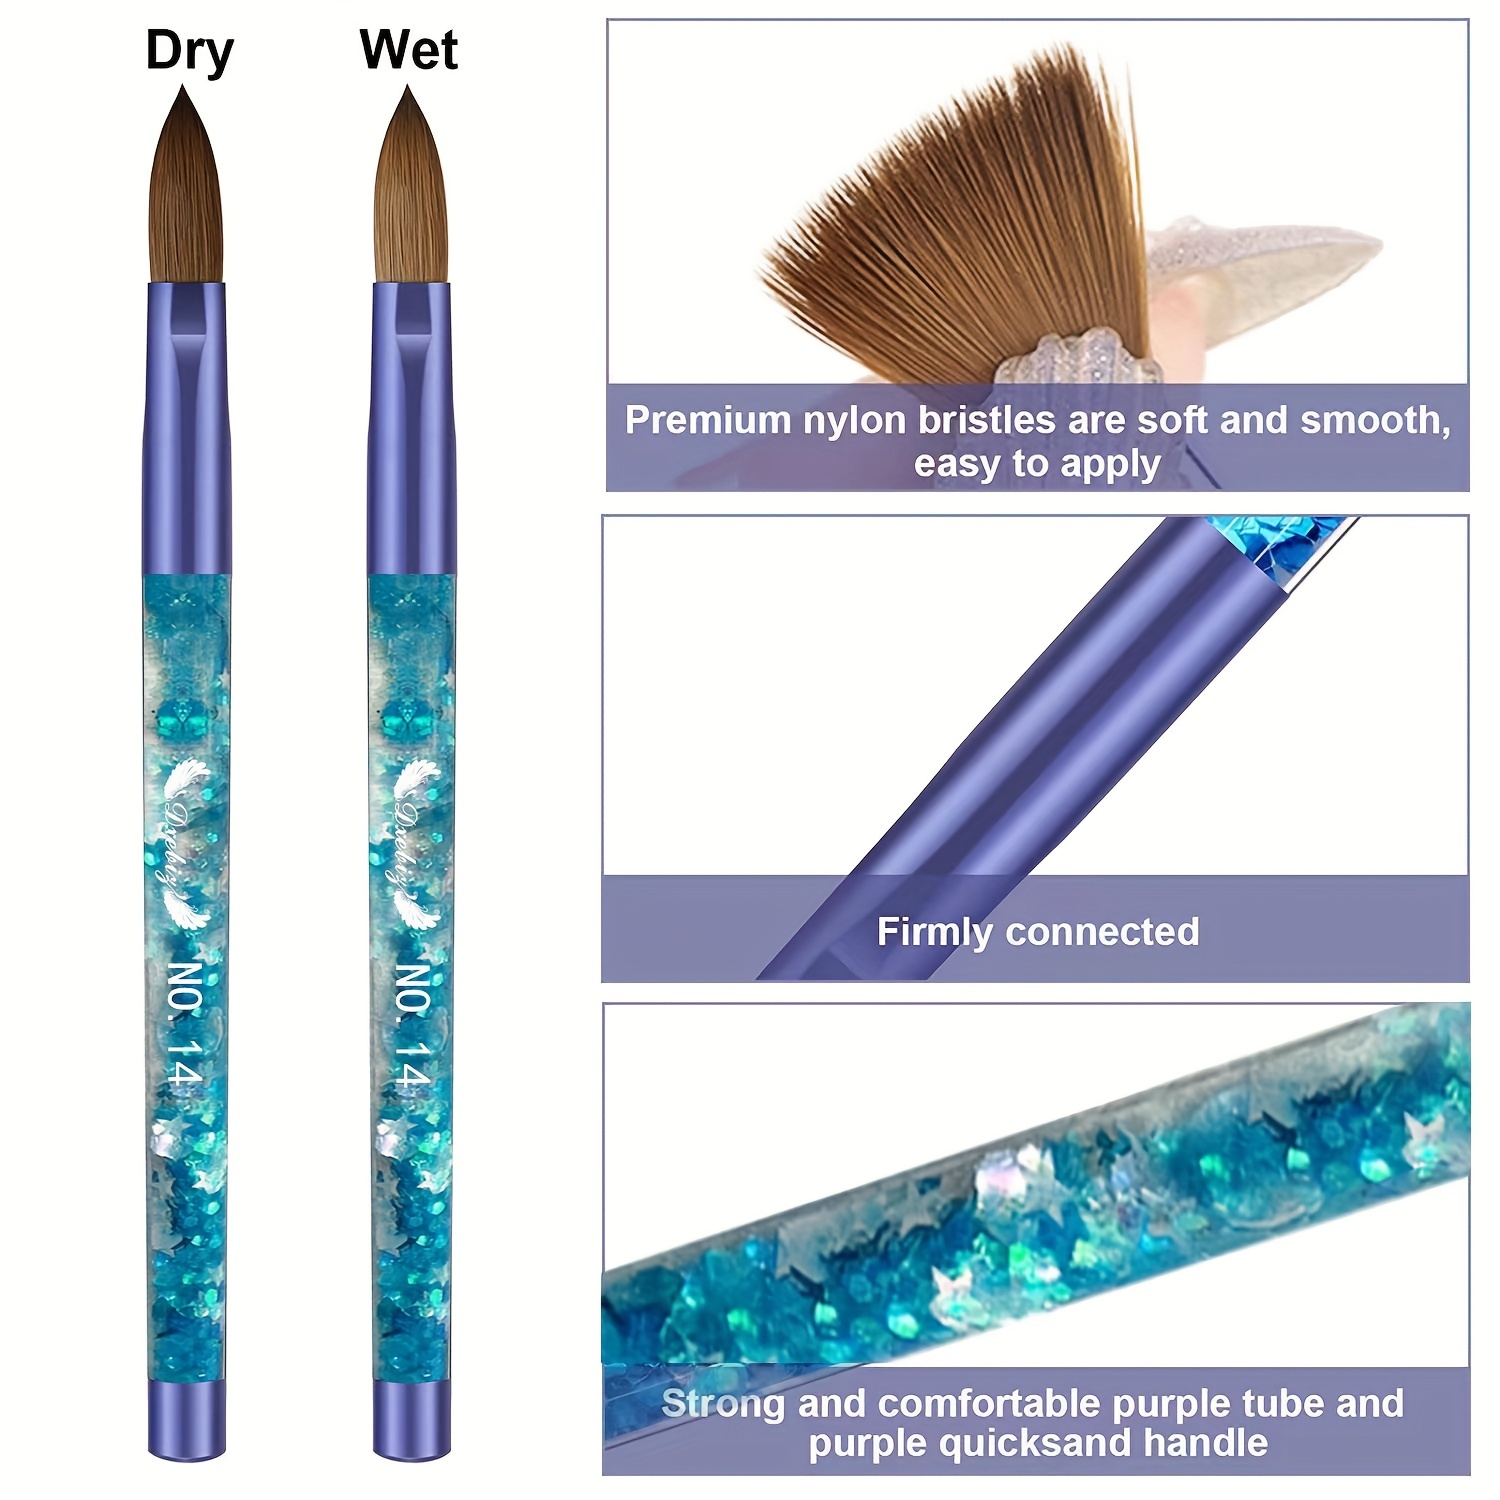 Acrylic Nail Brush Set Size 8/10/14 Acrylic Nail Brushes For